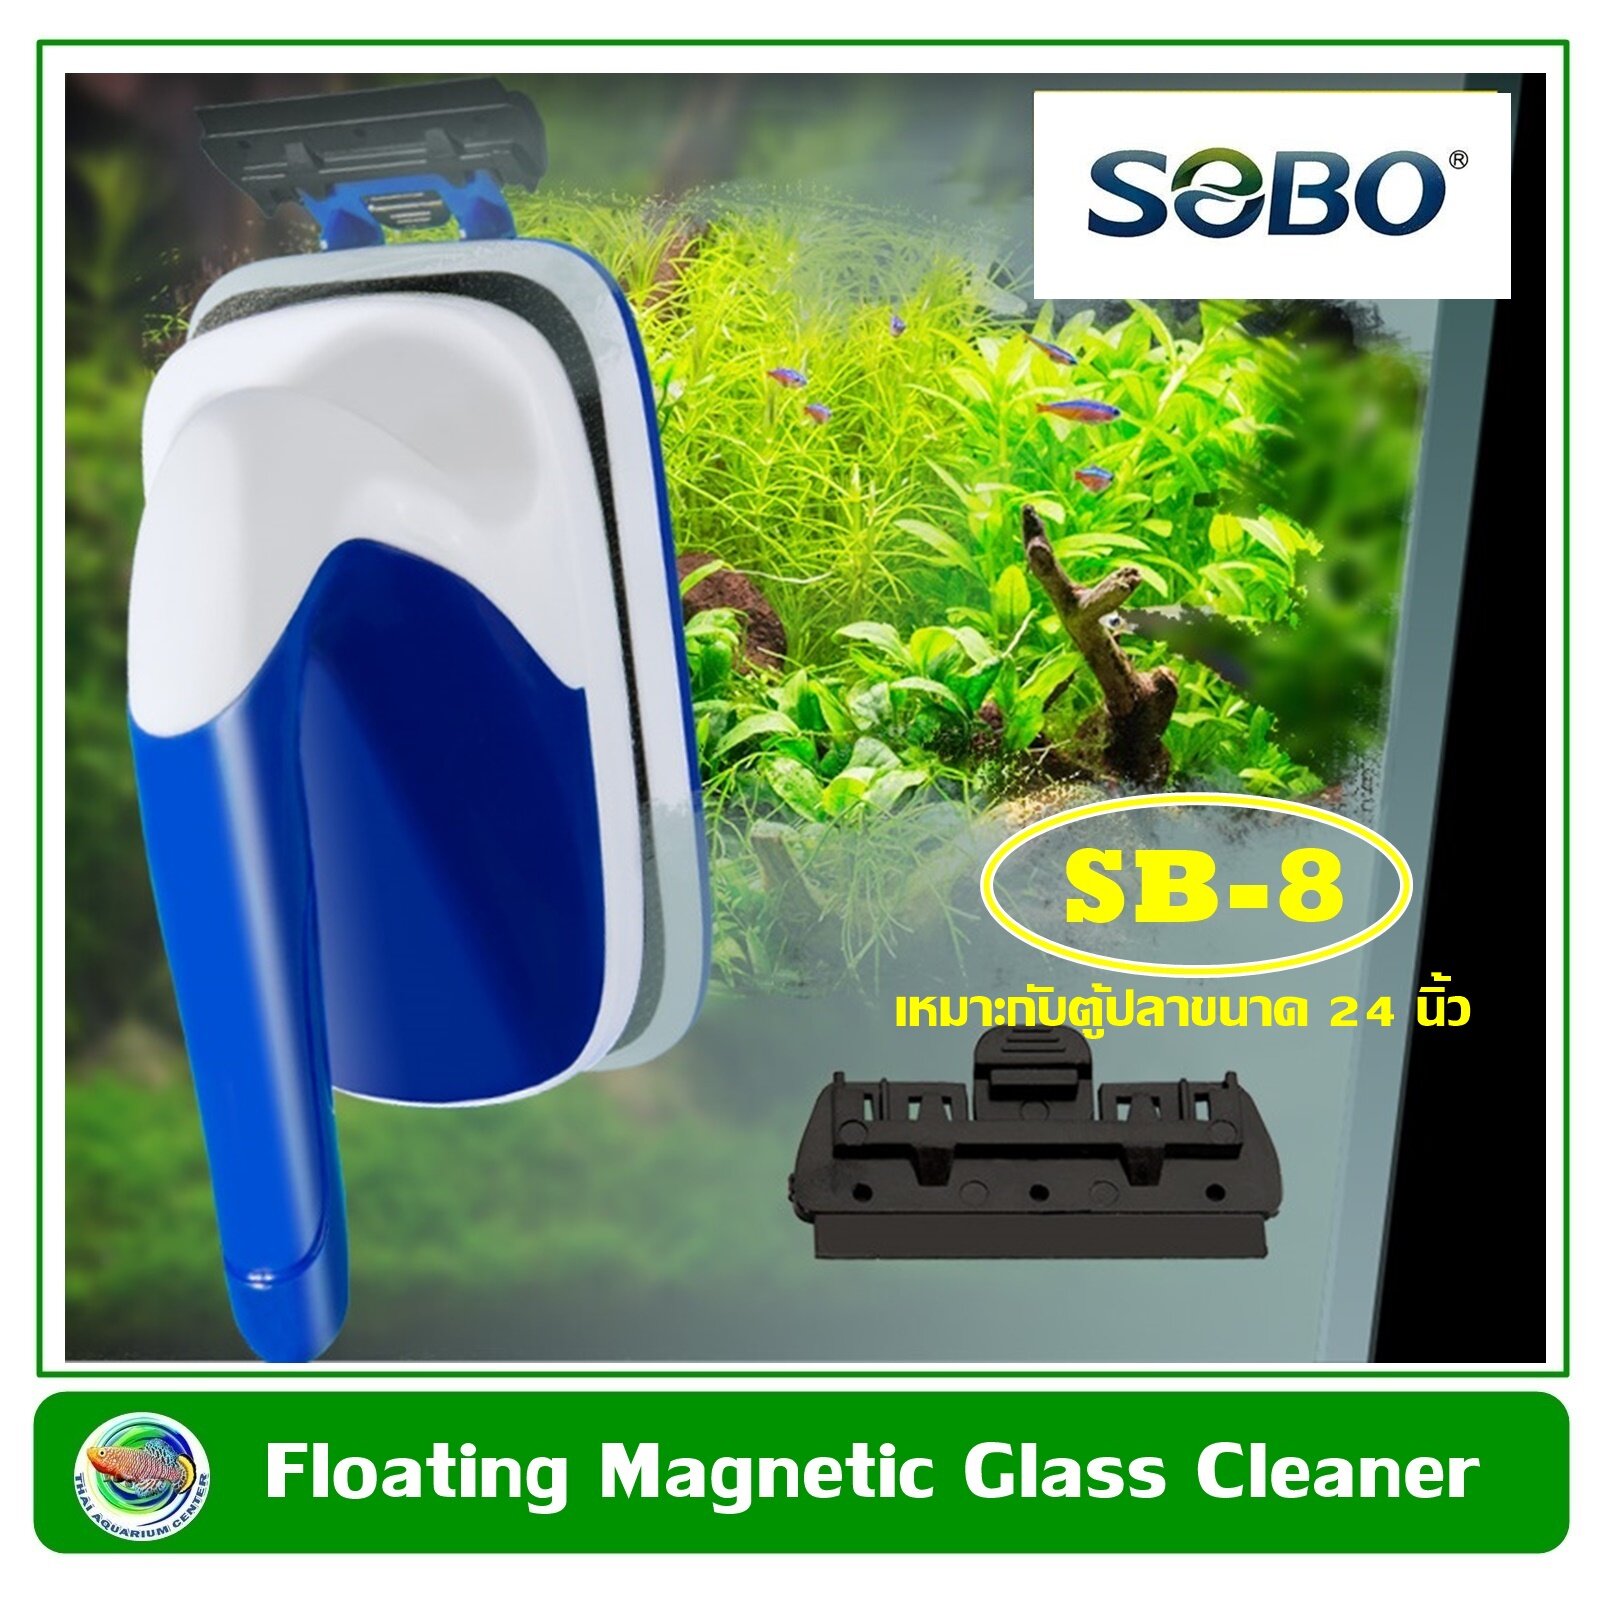 SOBO SB-6 Floating Magnetic Glass Cleaner แปรงแม่เหล็ก แปรงแม่เหล็กลอยน้ำขัดกระจกตู้ปลา เหมาะกับตู้ปลาขนาด 12 นิ้ว